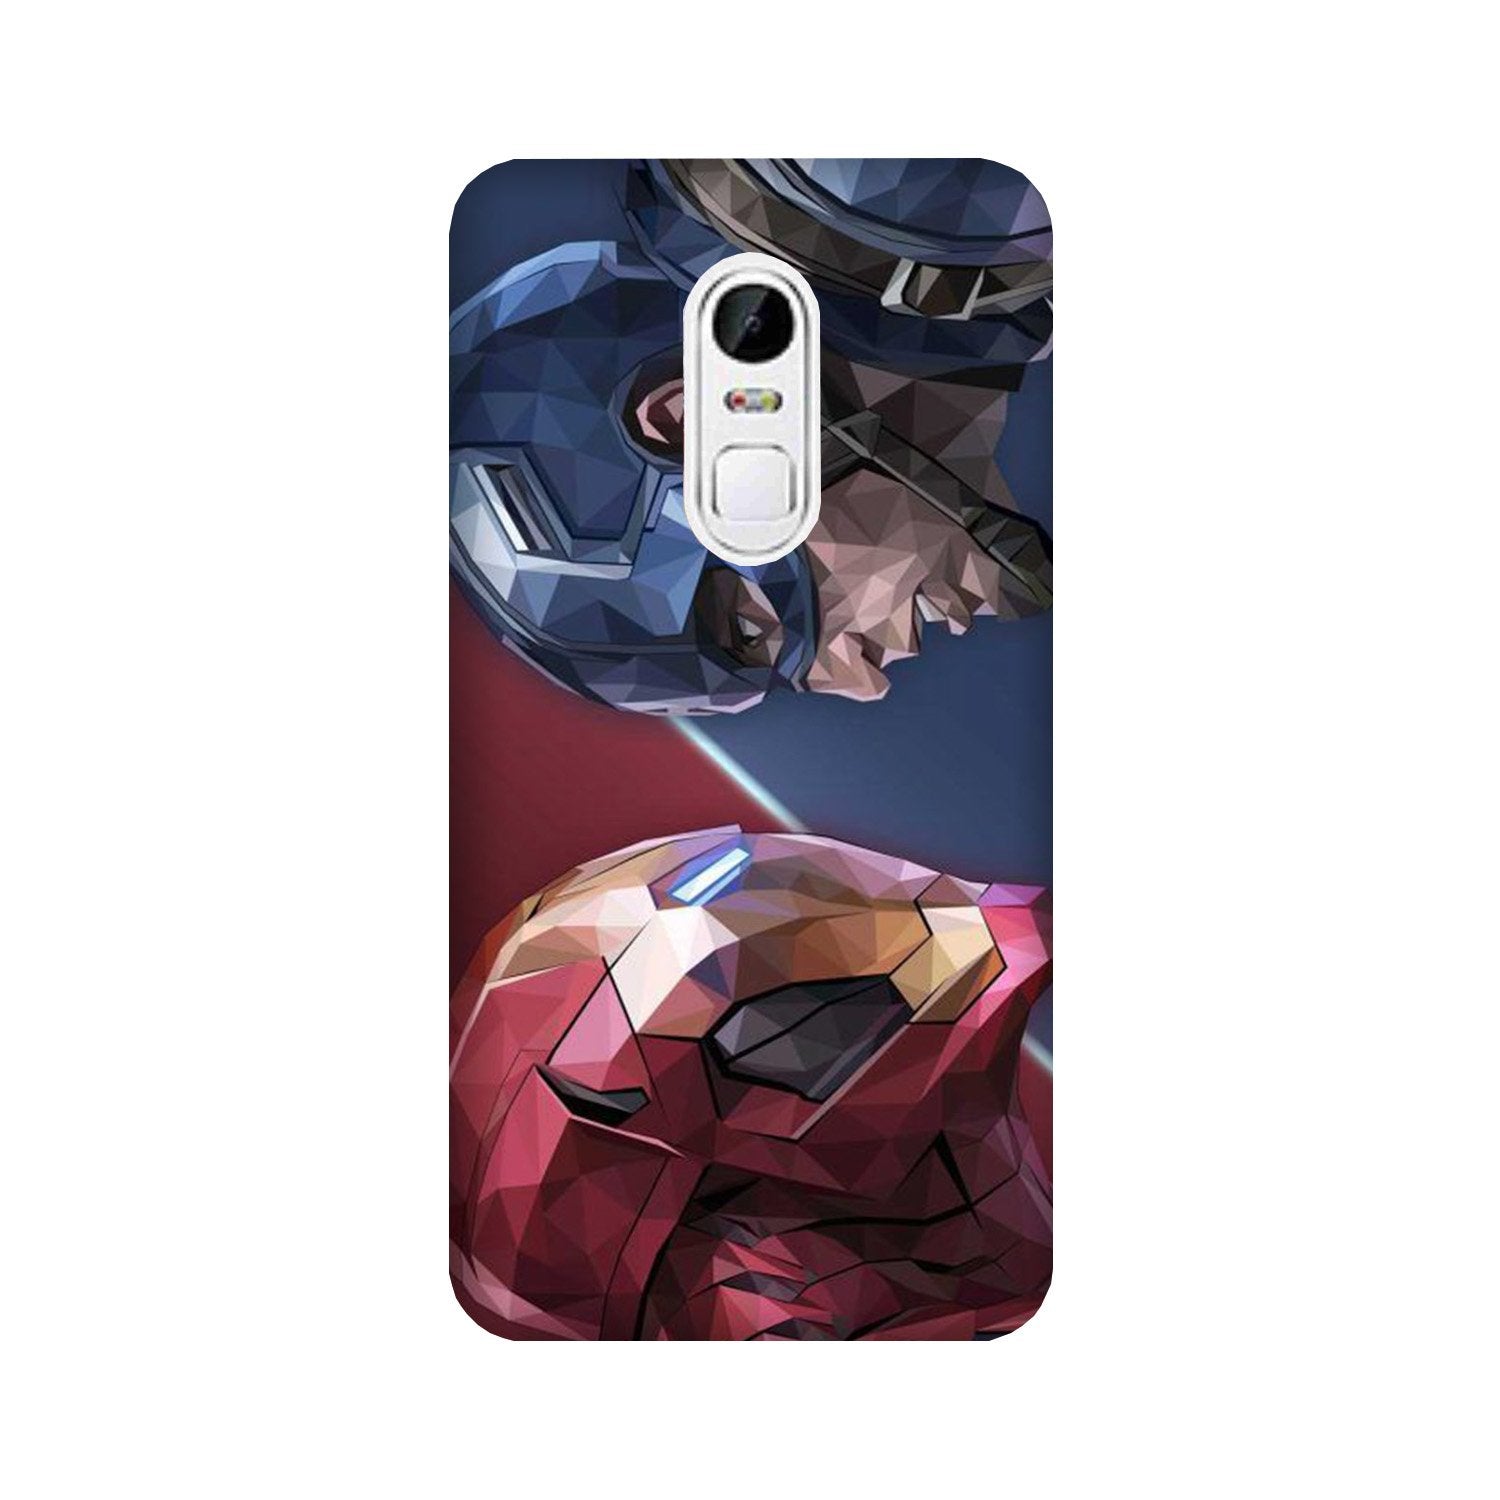 Ironman Captain America Case for Lenovo Vibe X3 (Design No. 245)